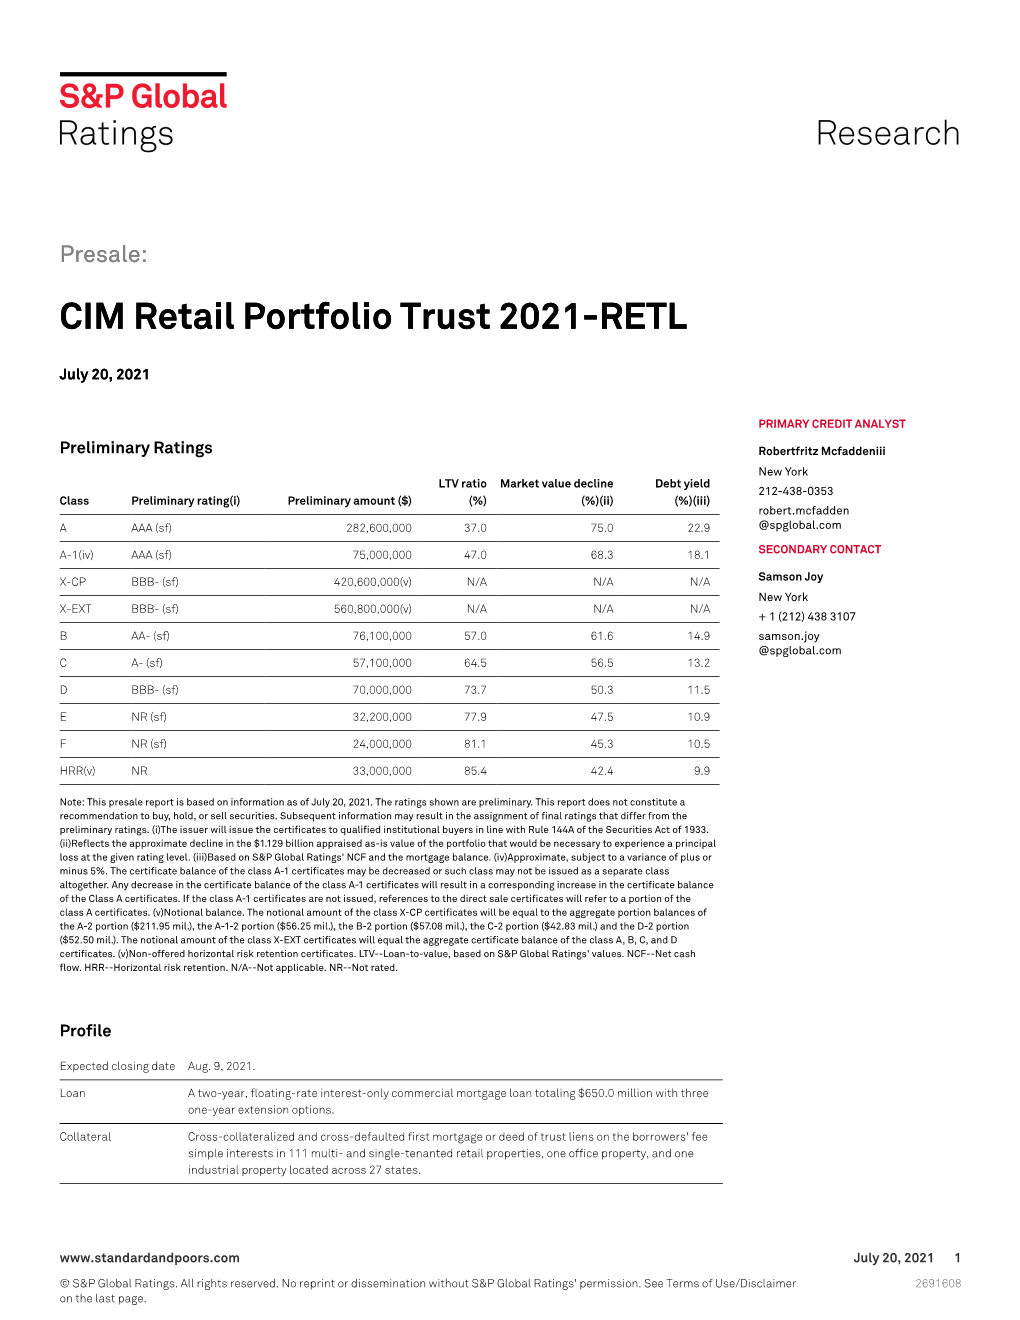 CIM Retail Portfolio Trust 2021-RETL